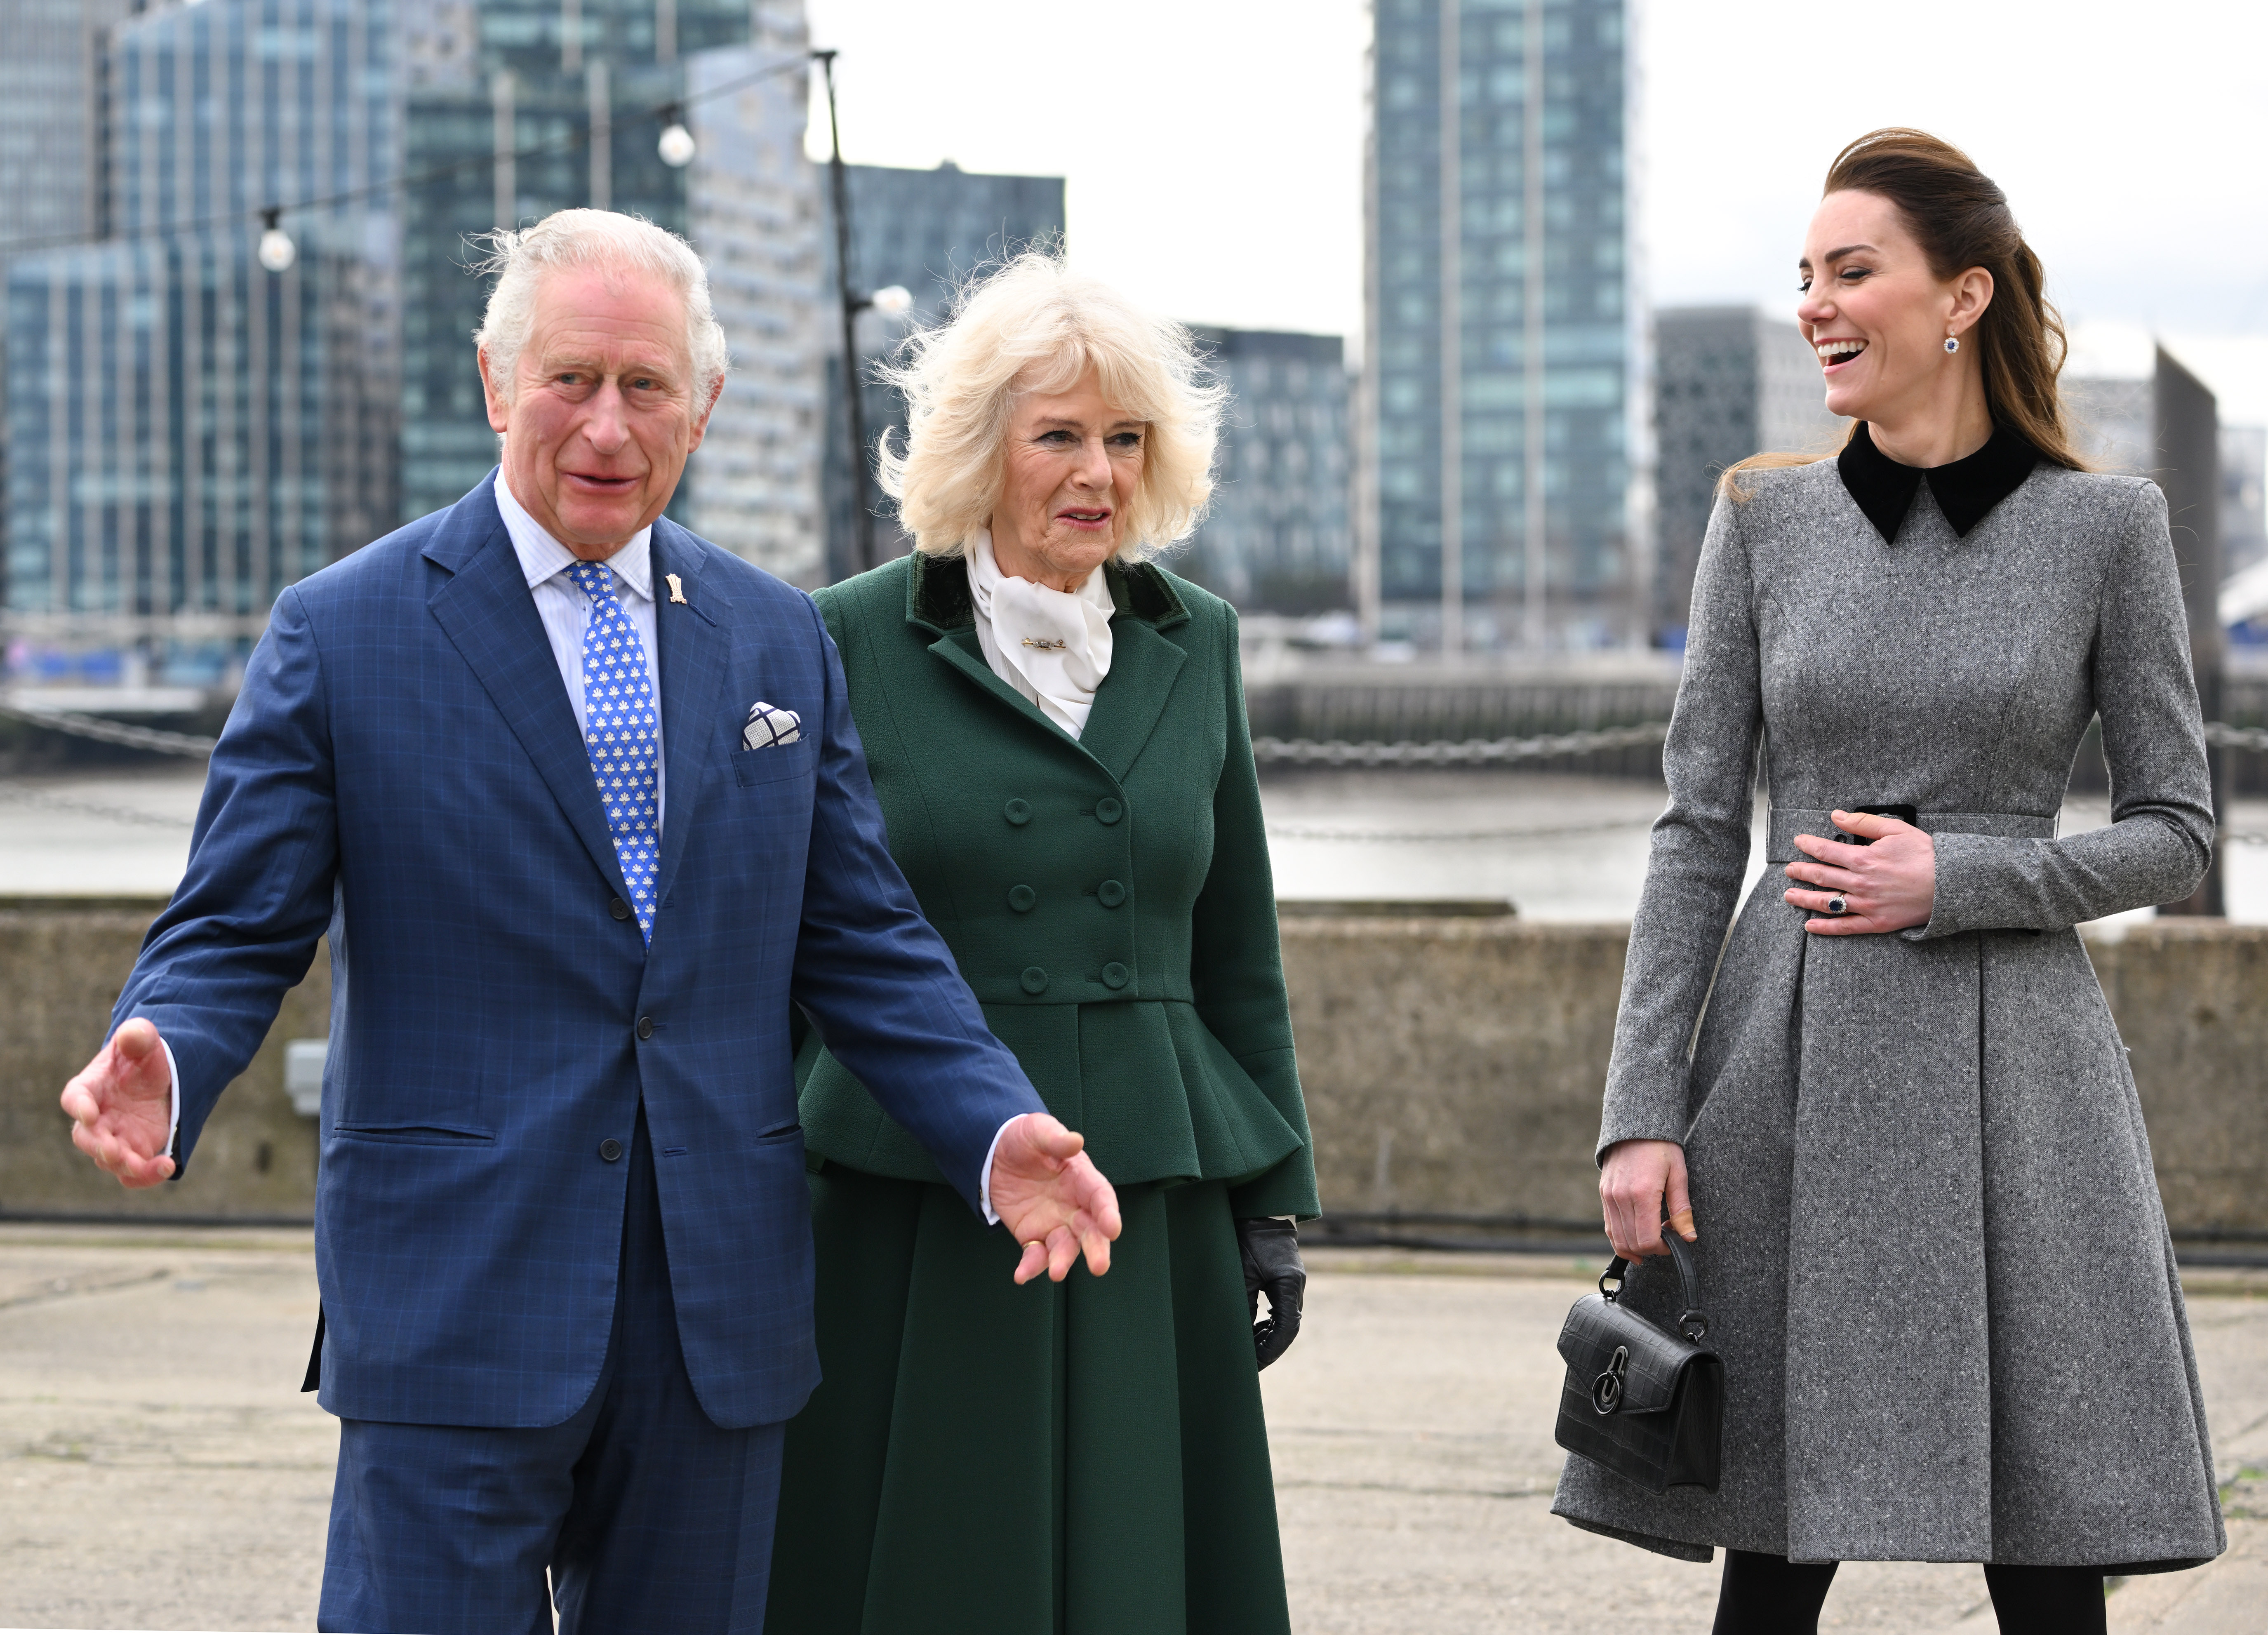 El rey Charles III, la reina Camilla y la princesa Catherine en su visita al centro de formación para las artes y la cultura de la Fundación del Príncipe en Trinity Buoy Wharf el 03 de febrero de 2022 en Londres, Inglaterra | Foto: Getty Images